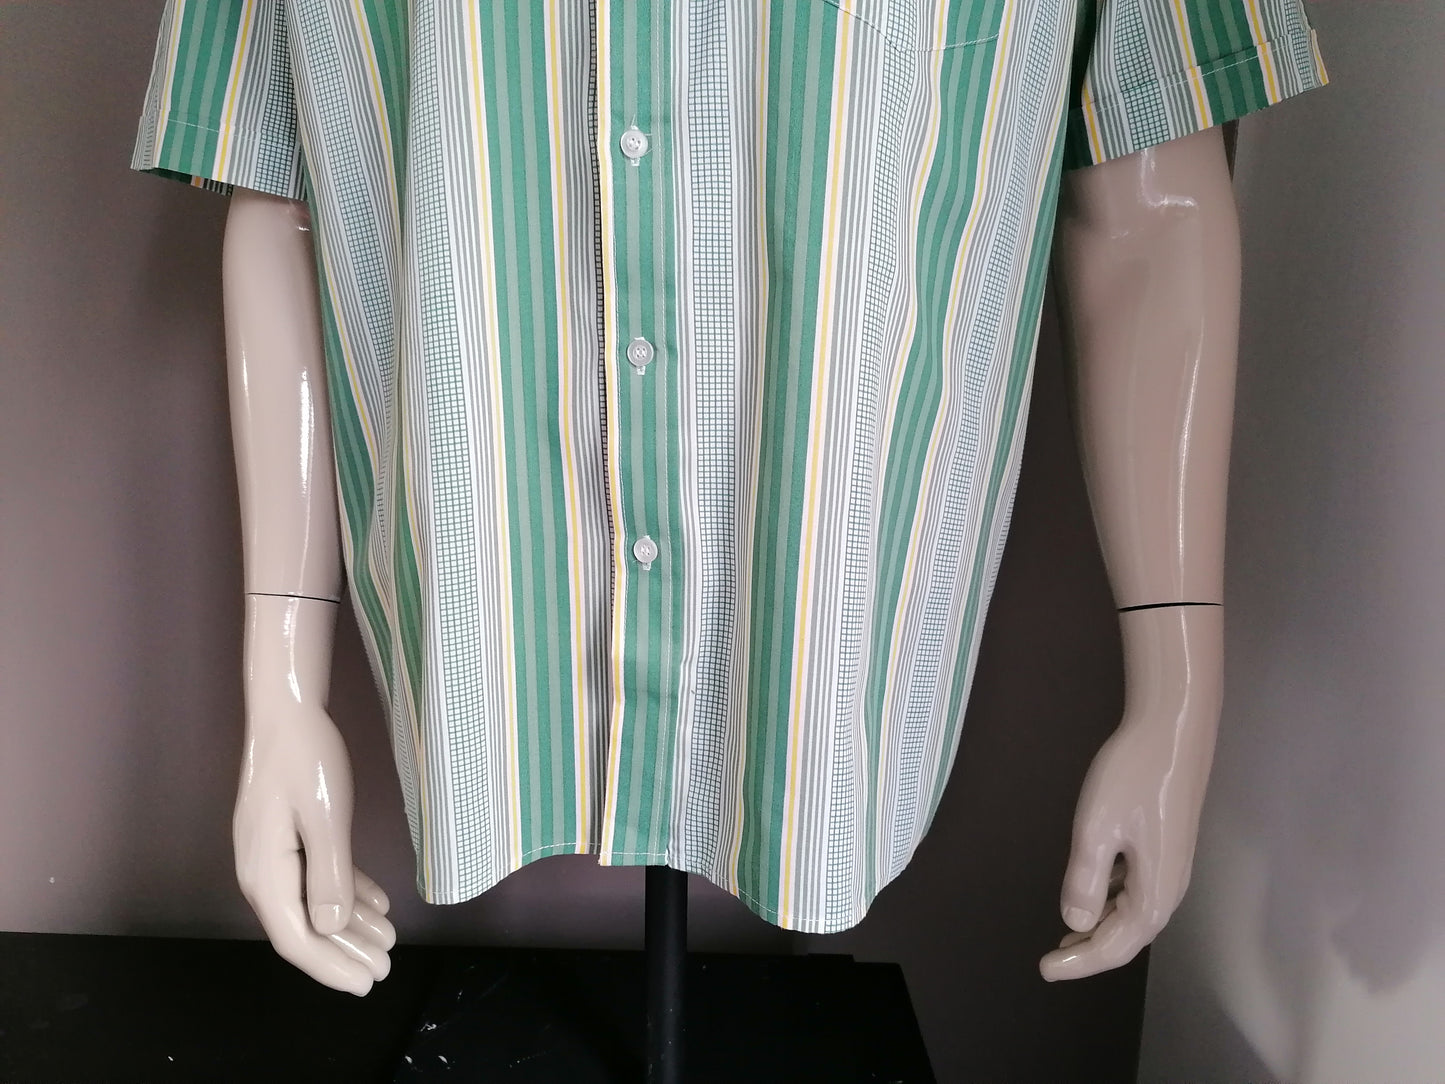 Vintage Nino Visconti Camisa Manga corta. Amarillo gris verde. Tamaño XXL / 2XL. 65% de poliéster y 35% de algodón